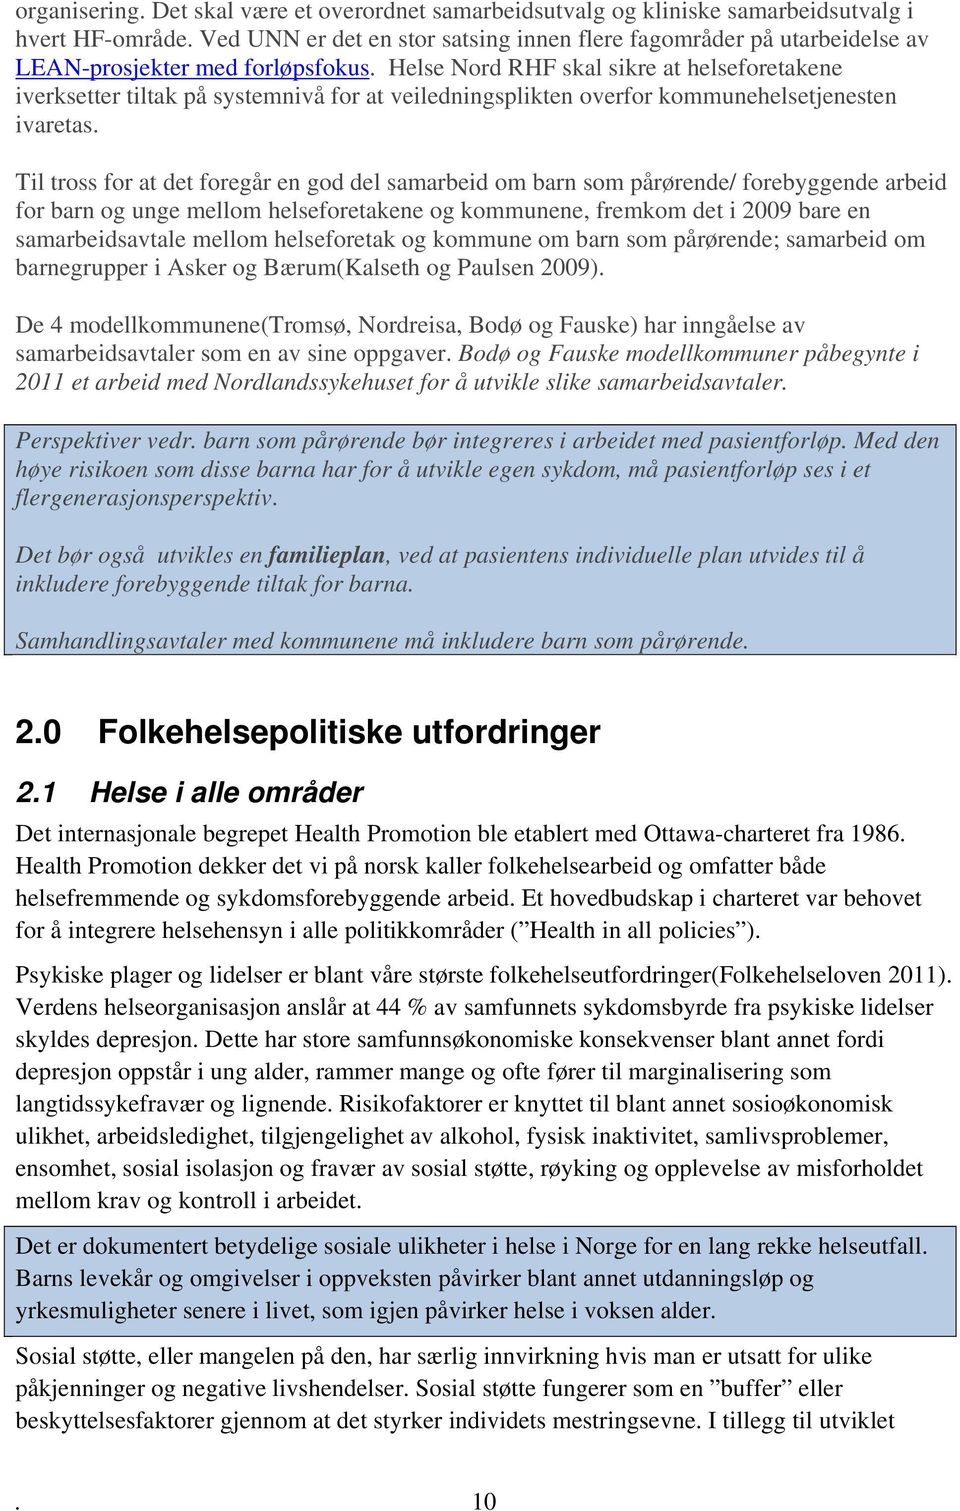 Helse Nord RHF skal sikre at helseforetakene iverksetter tiltak på systemnivå for at veiledningsplikten overfor kommunehelsetjenesten ivaretas.